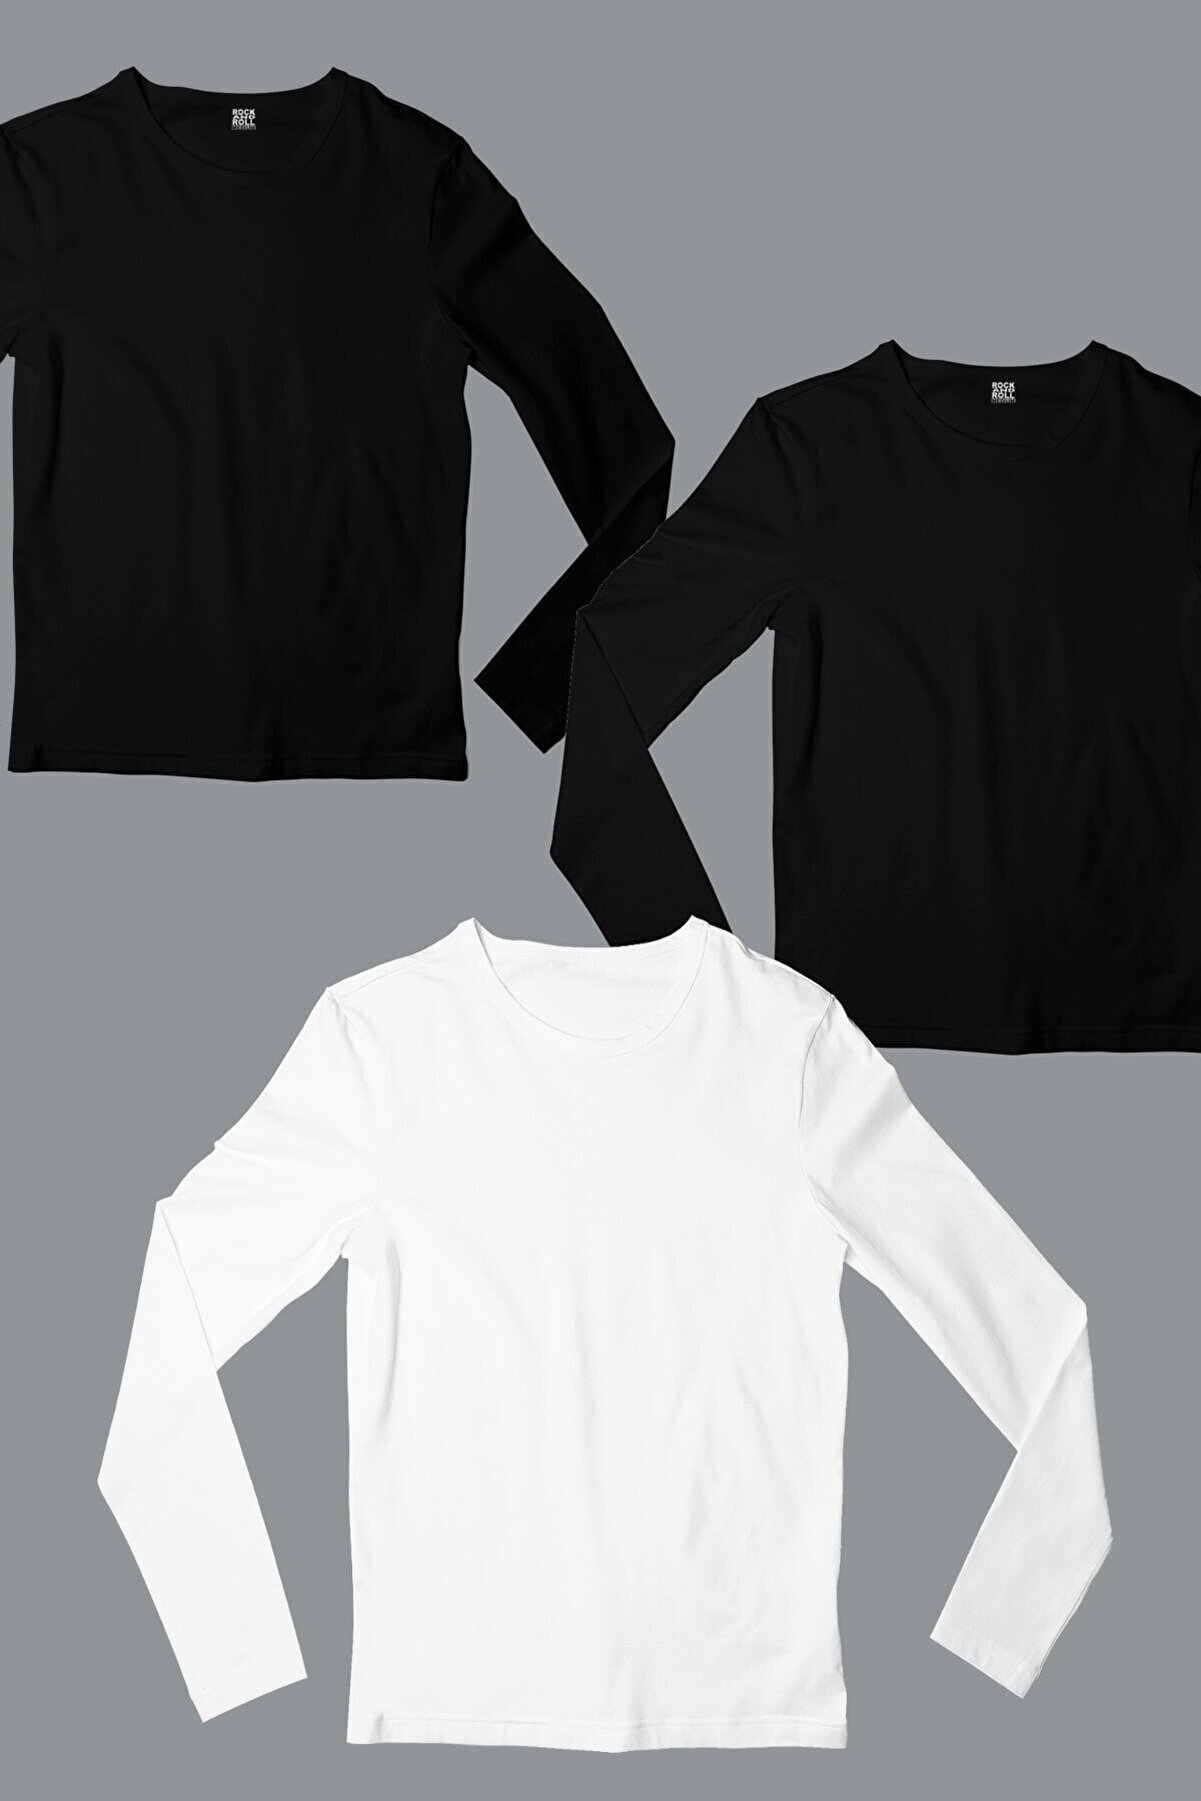 Düz, Baskısız 2 Siyah, 1 Beyaz Uzun Kollu Erkek T-shirt 3'lü Eko Paket